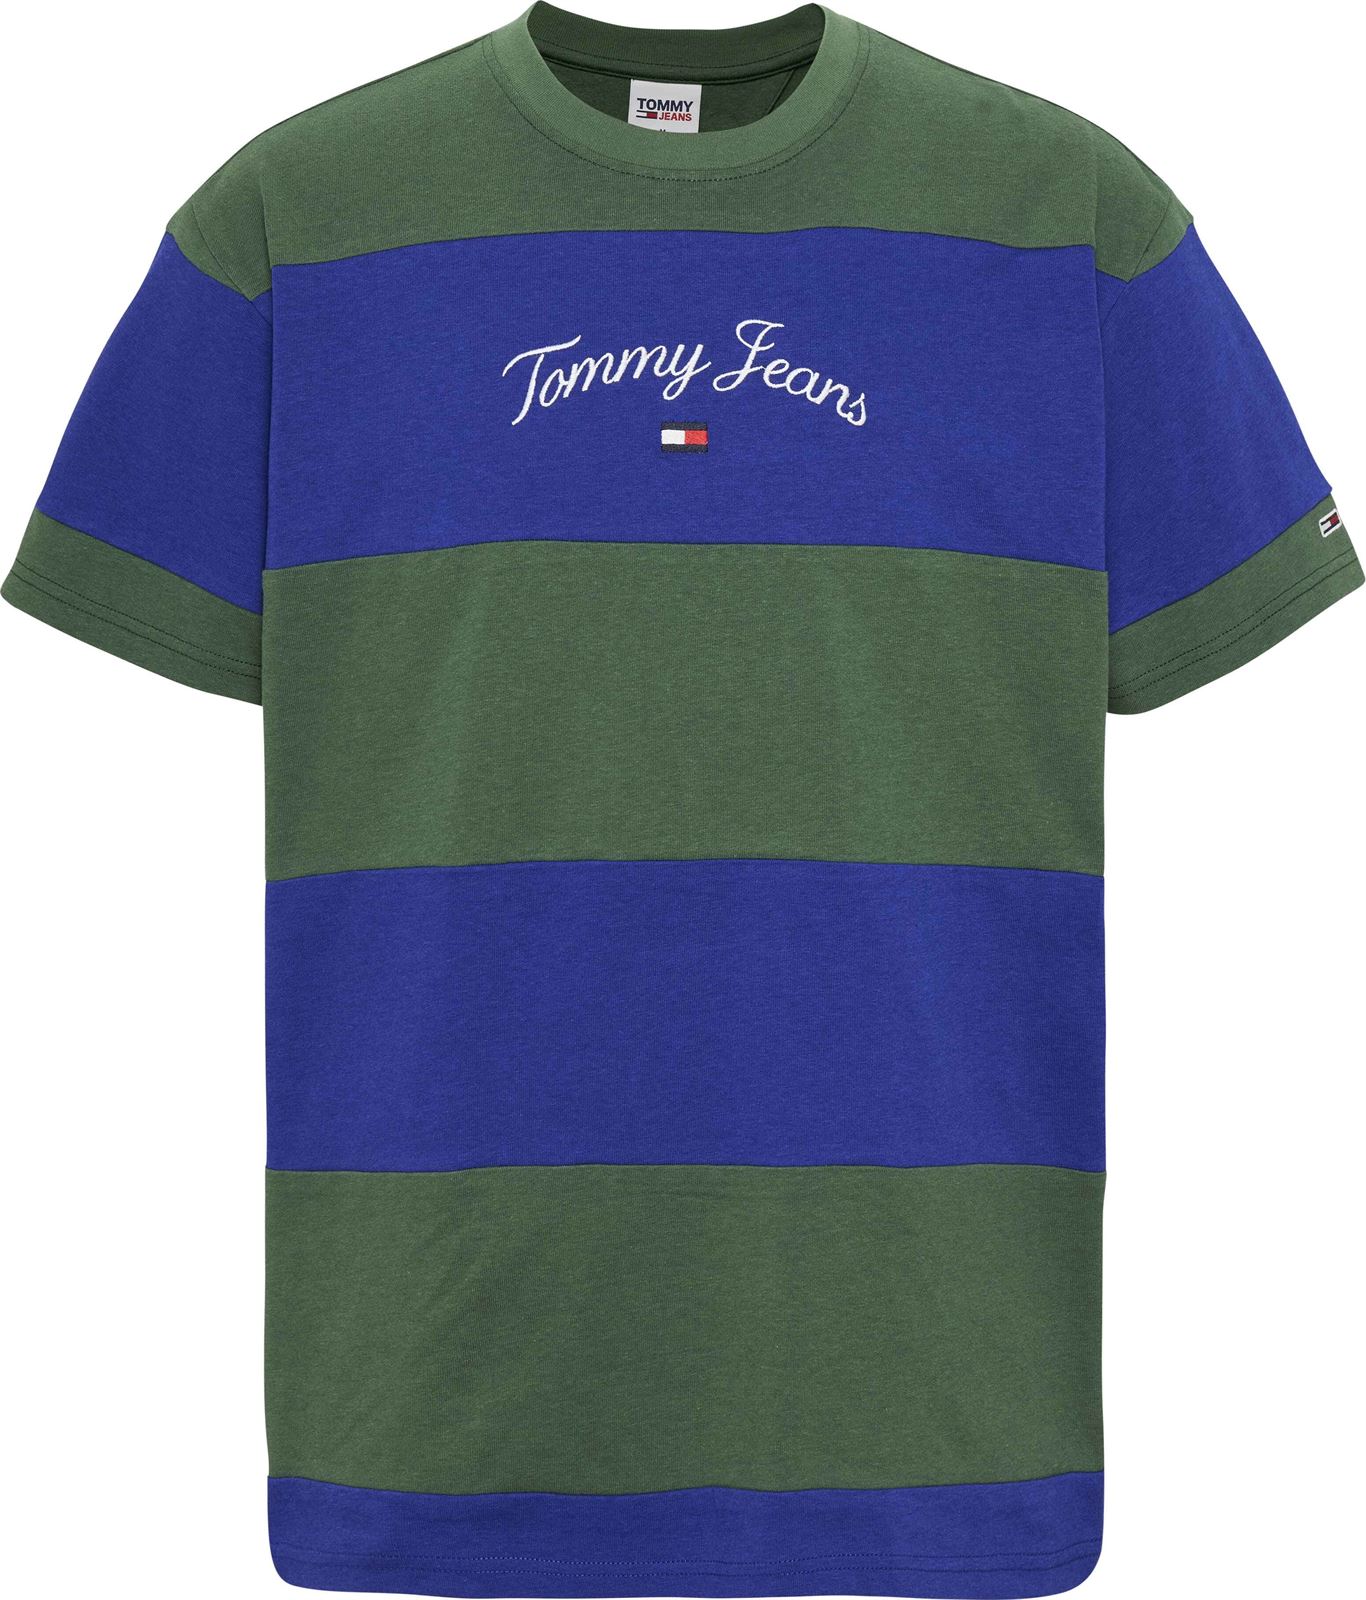 Camiseta TOMMY JEANS DM0DM16836 C9B navy voyage/multi - Imagen 1